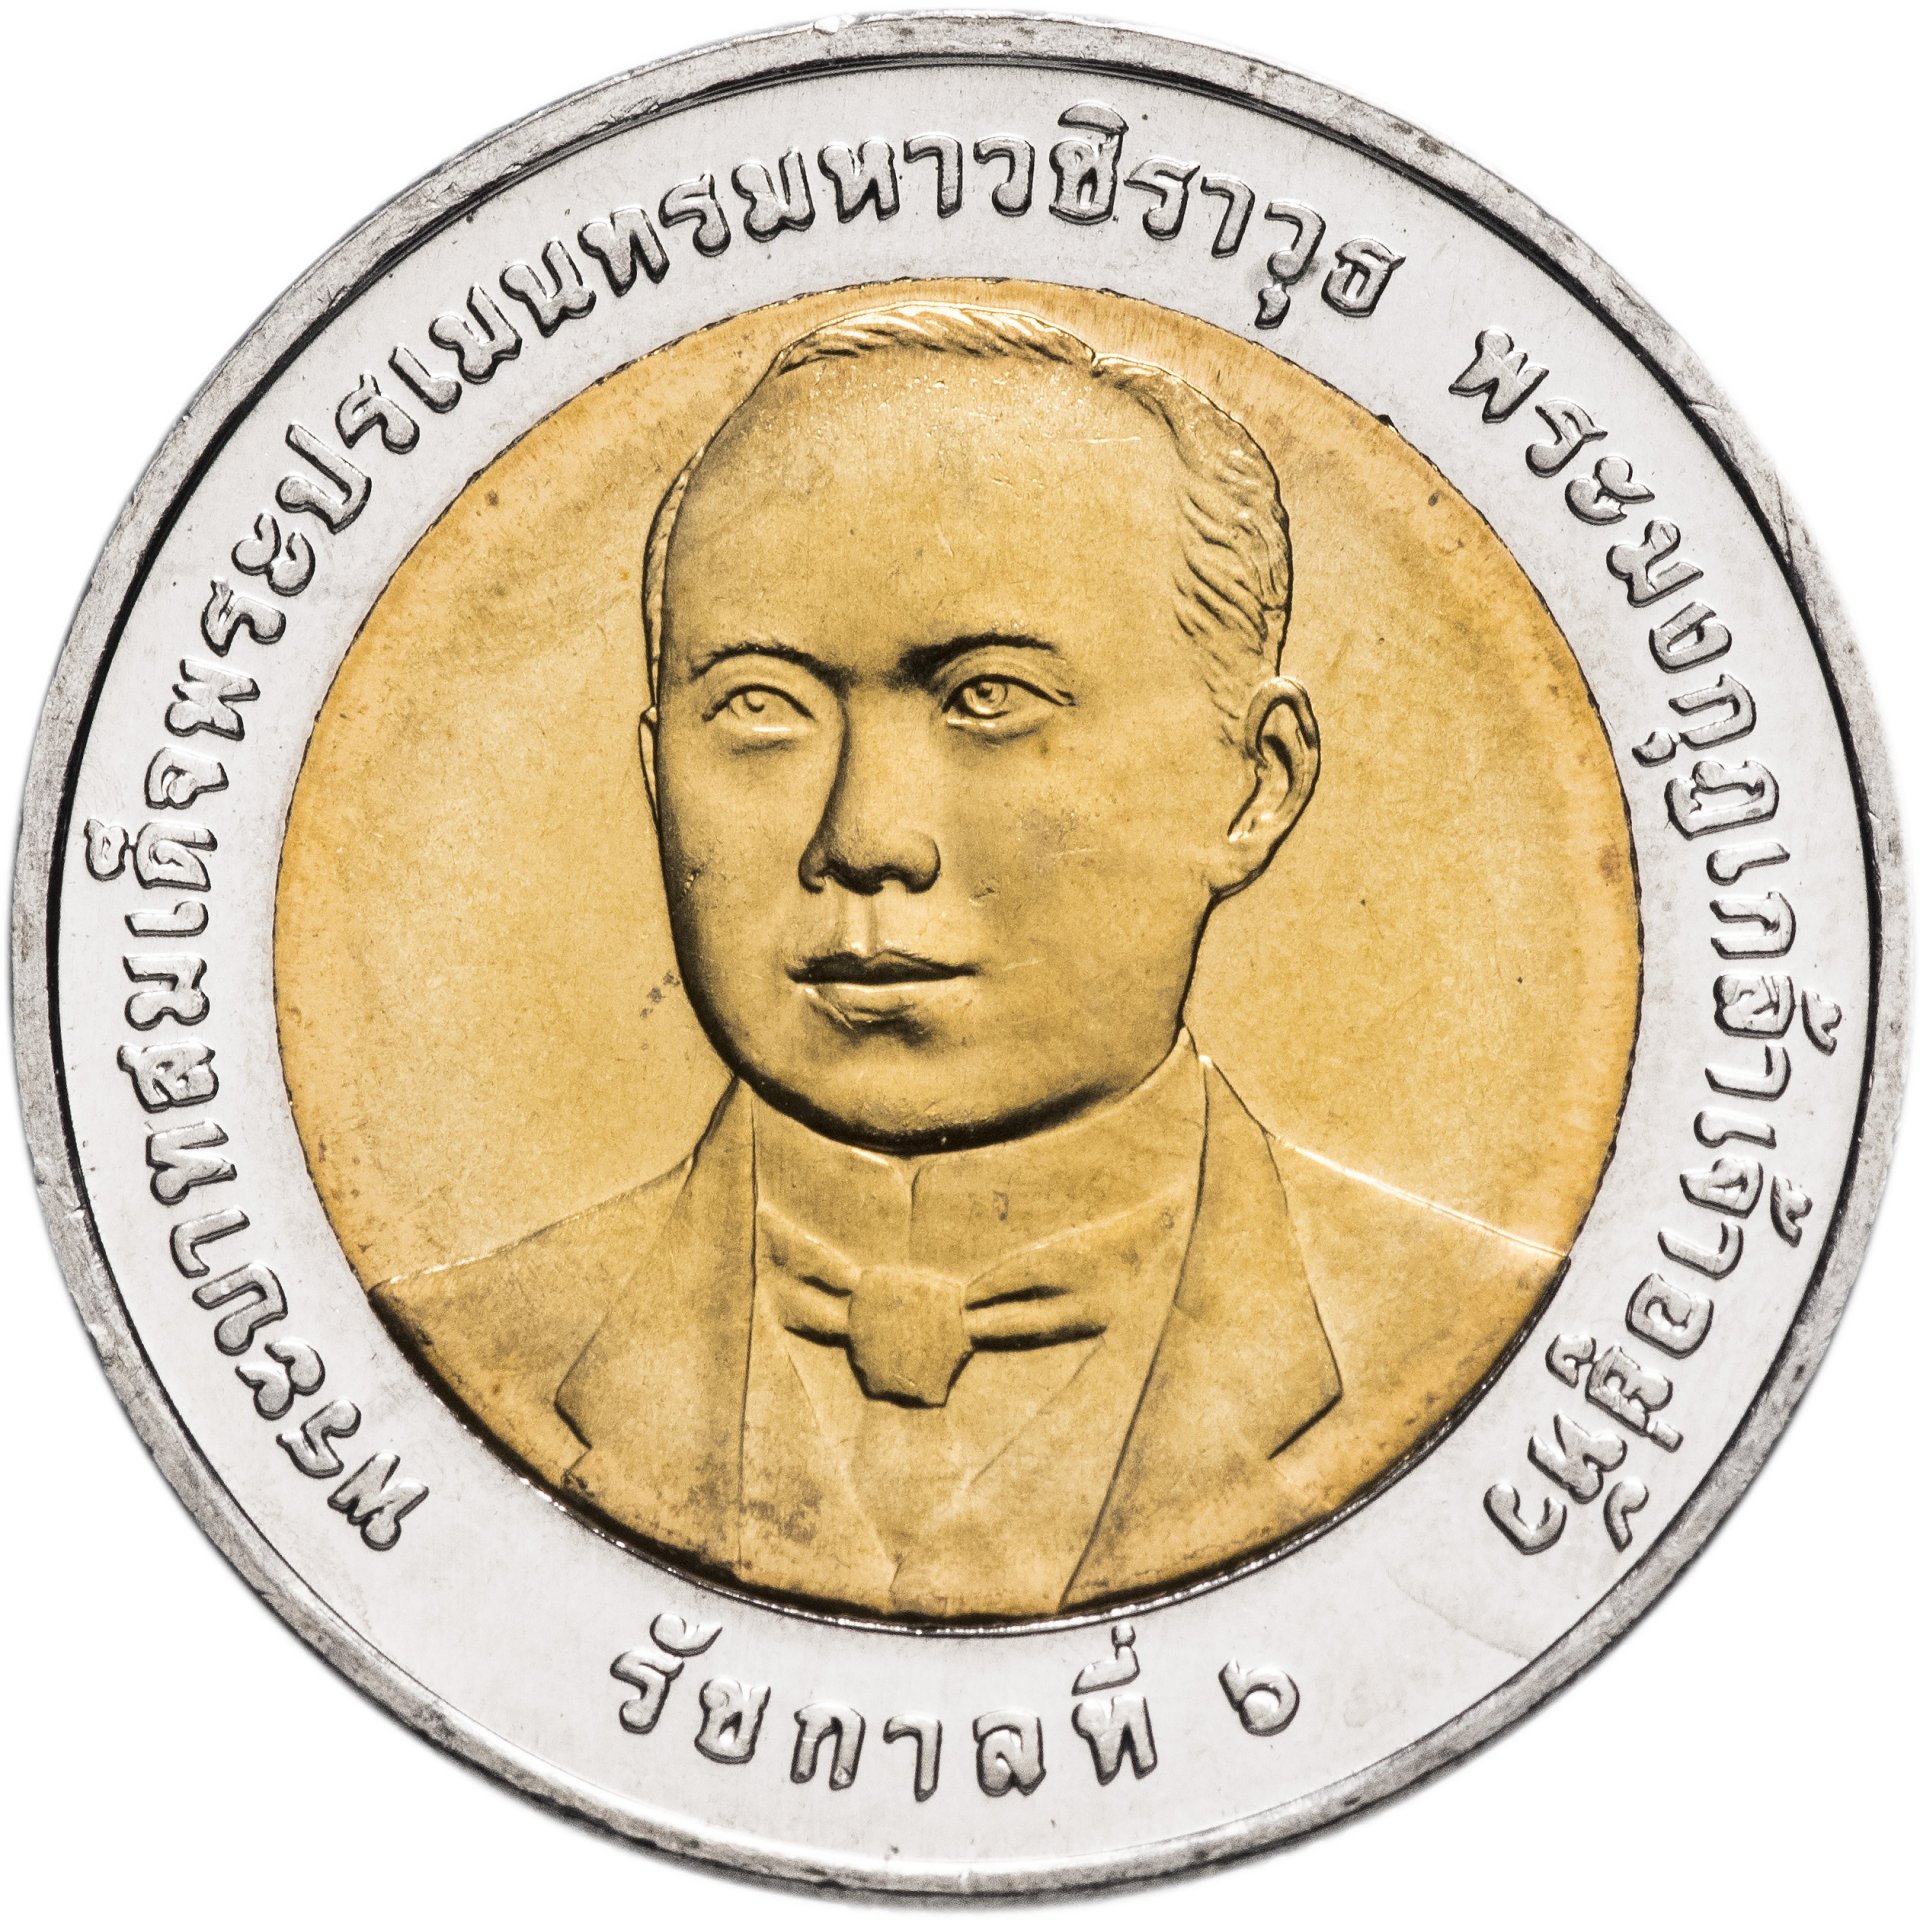 2500 батов в рублях. Таиланд 10 бат, 2012. Таиланд 10 бат, 2555 (2012). 10 Бат монета. 100 Бат.